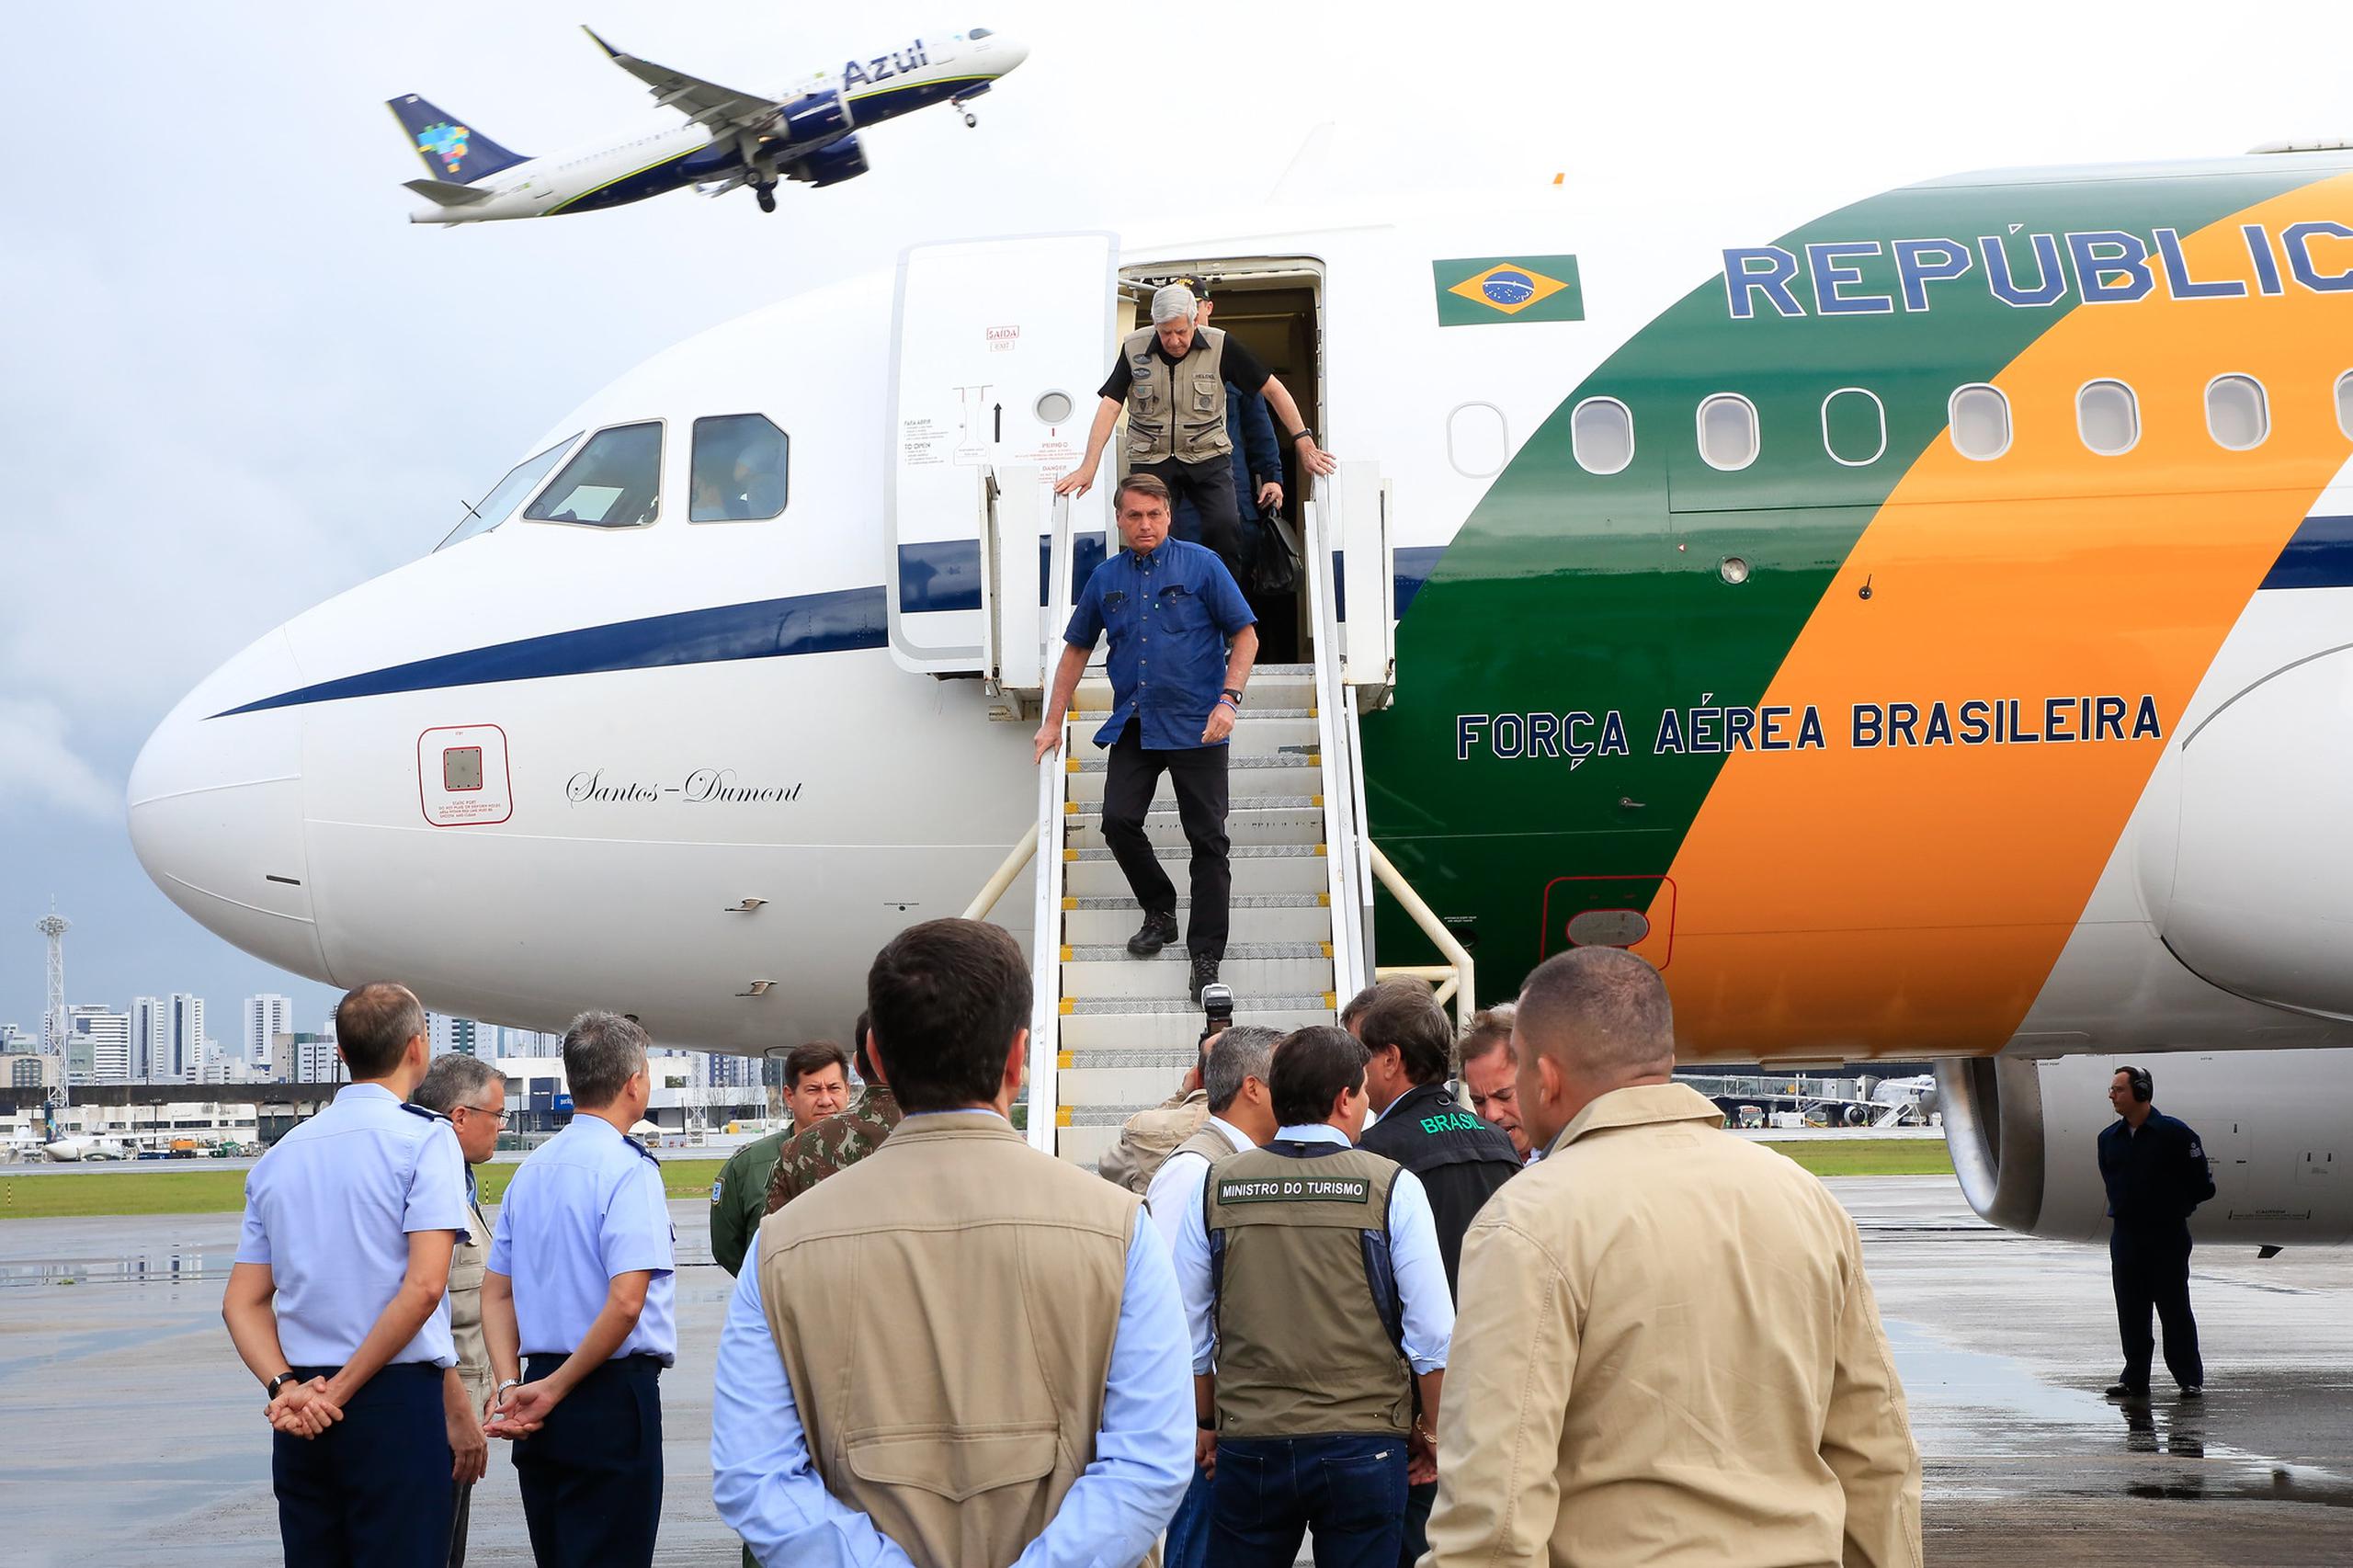 Fotografía cedida por Presidencia brasileña que muestra al presidente de Brasil, Jair Bolsonaro, a su llegada a la ciudad de Recife, capital del estado de Pernambuco (Brasil). EFE/Anderson Riedel Presidencia de Brasil
